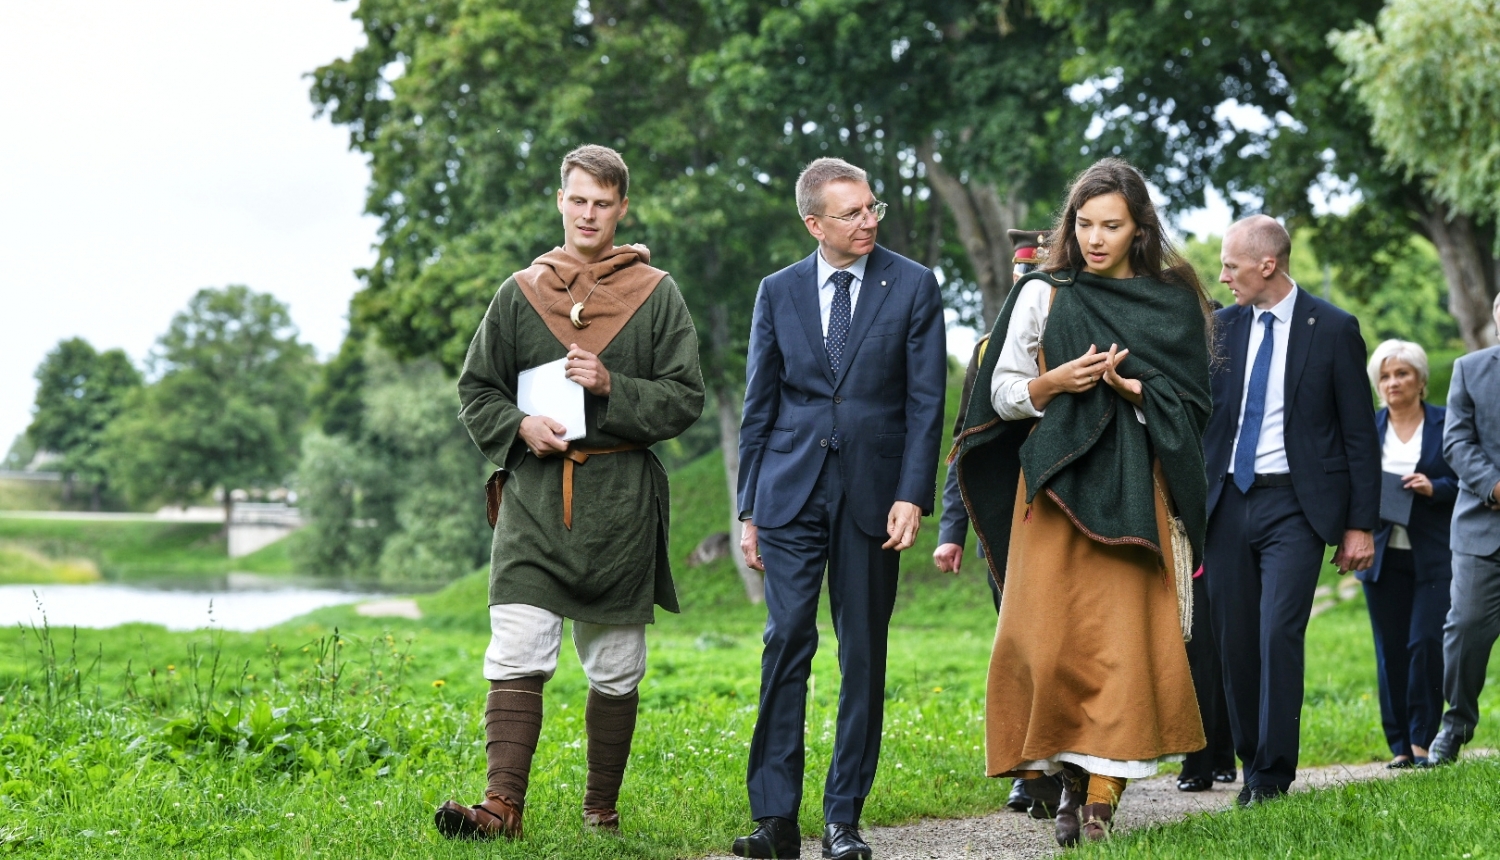 Valsts prezidents pastaigājas pa Grobiņas viduslaiku pils parku kopā ar pils darbiniekiem, kuri ģērbti vēsturiskos tērpos